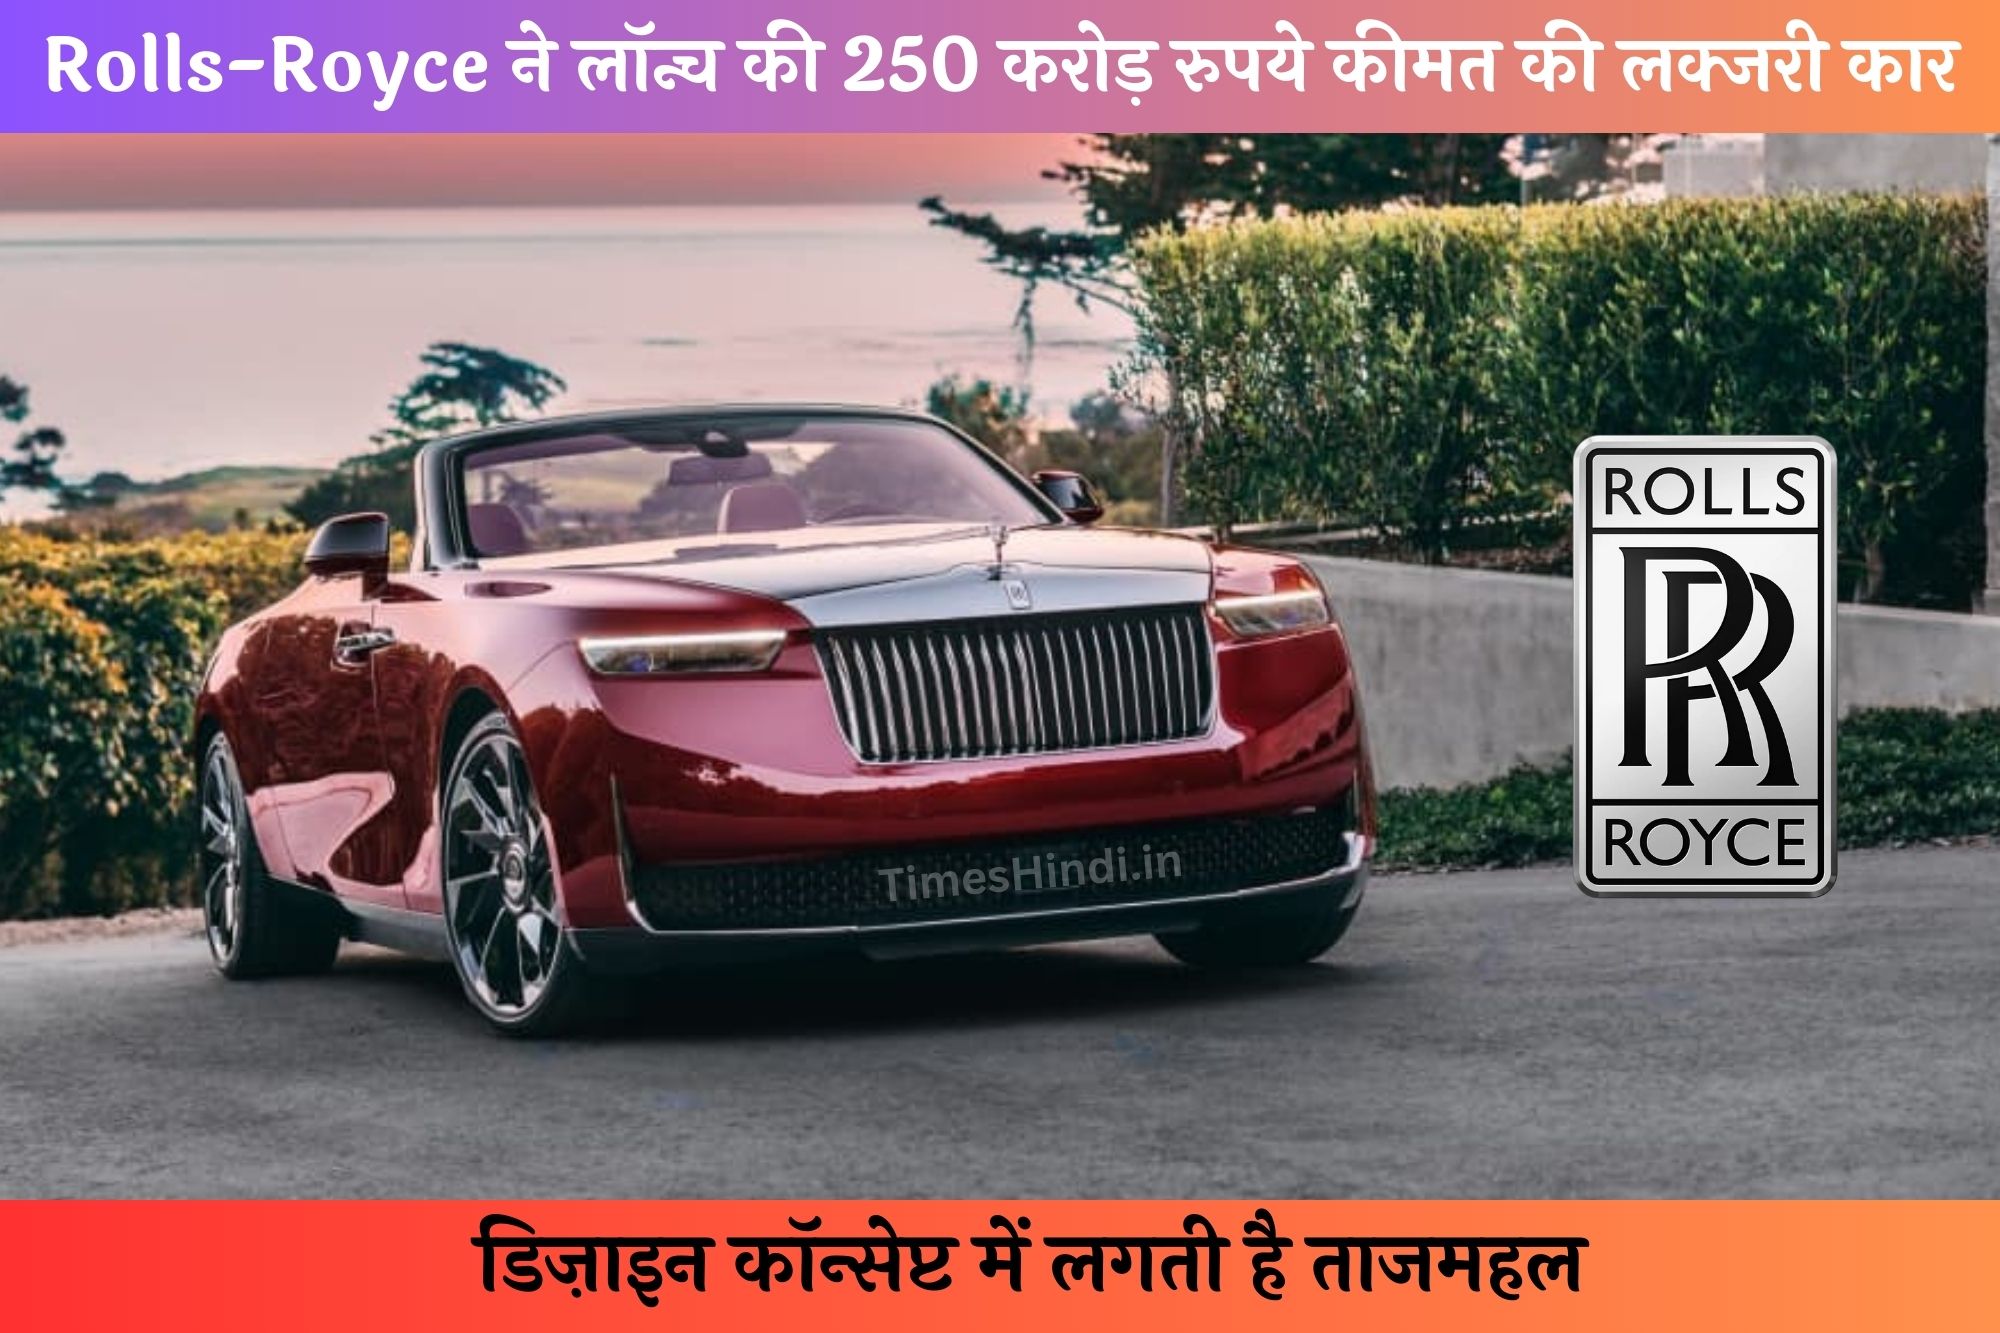 Rolls-Royce ने लॉन्च की 250 करोड़ रुपये कीमत की लक्जरी कार, डिज़ाइन कॉन्सेप्ट में लगती है ताजमहल